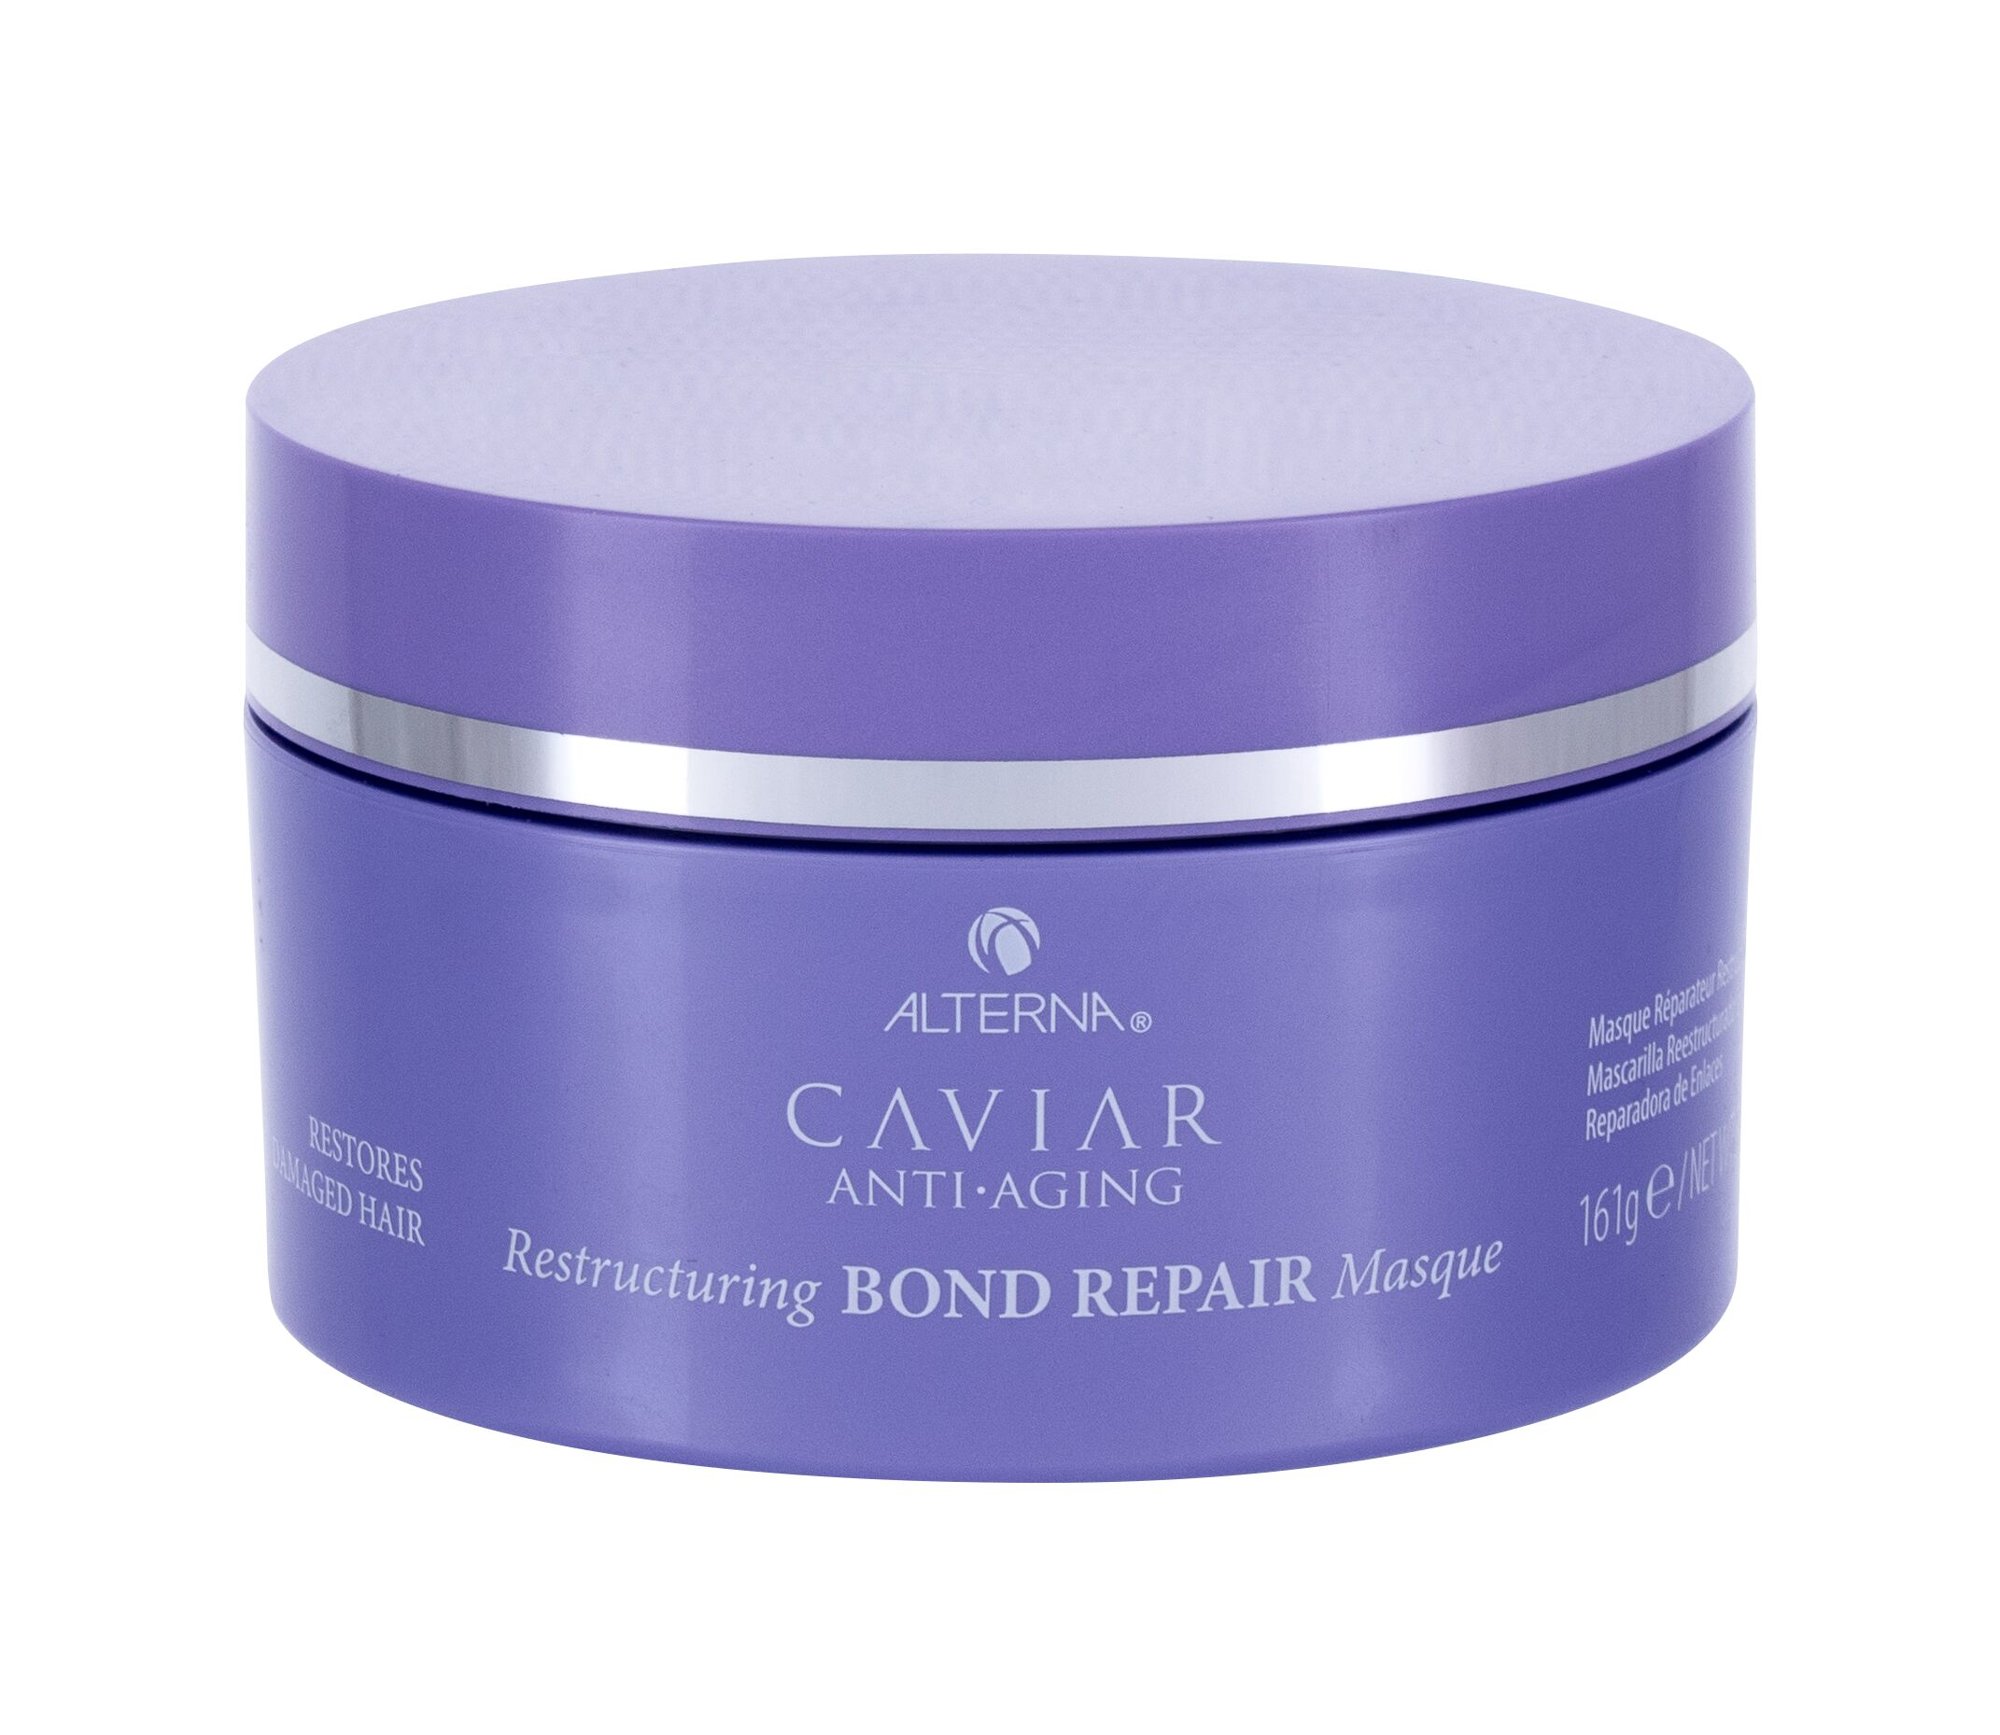 Alterna Caviar Anti-Aging Restructuring Bond Repair plaukų kaukė